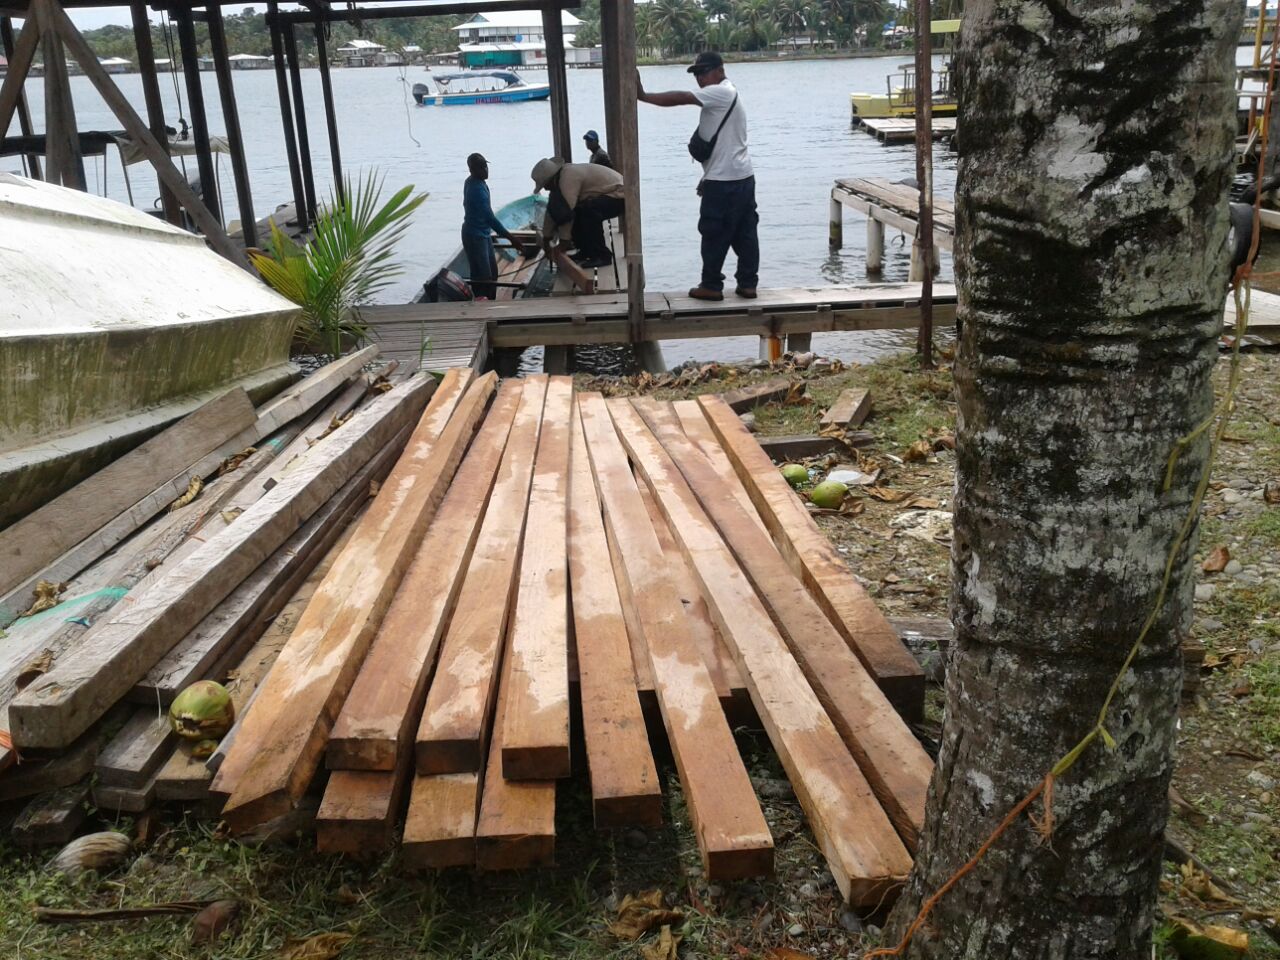 Confiscan madera en manglares de Isla Bastimentos - Crítica